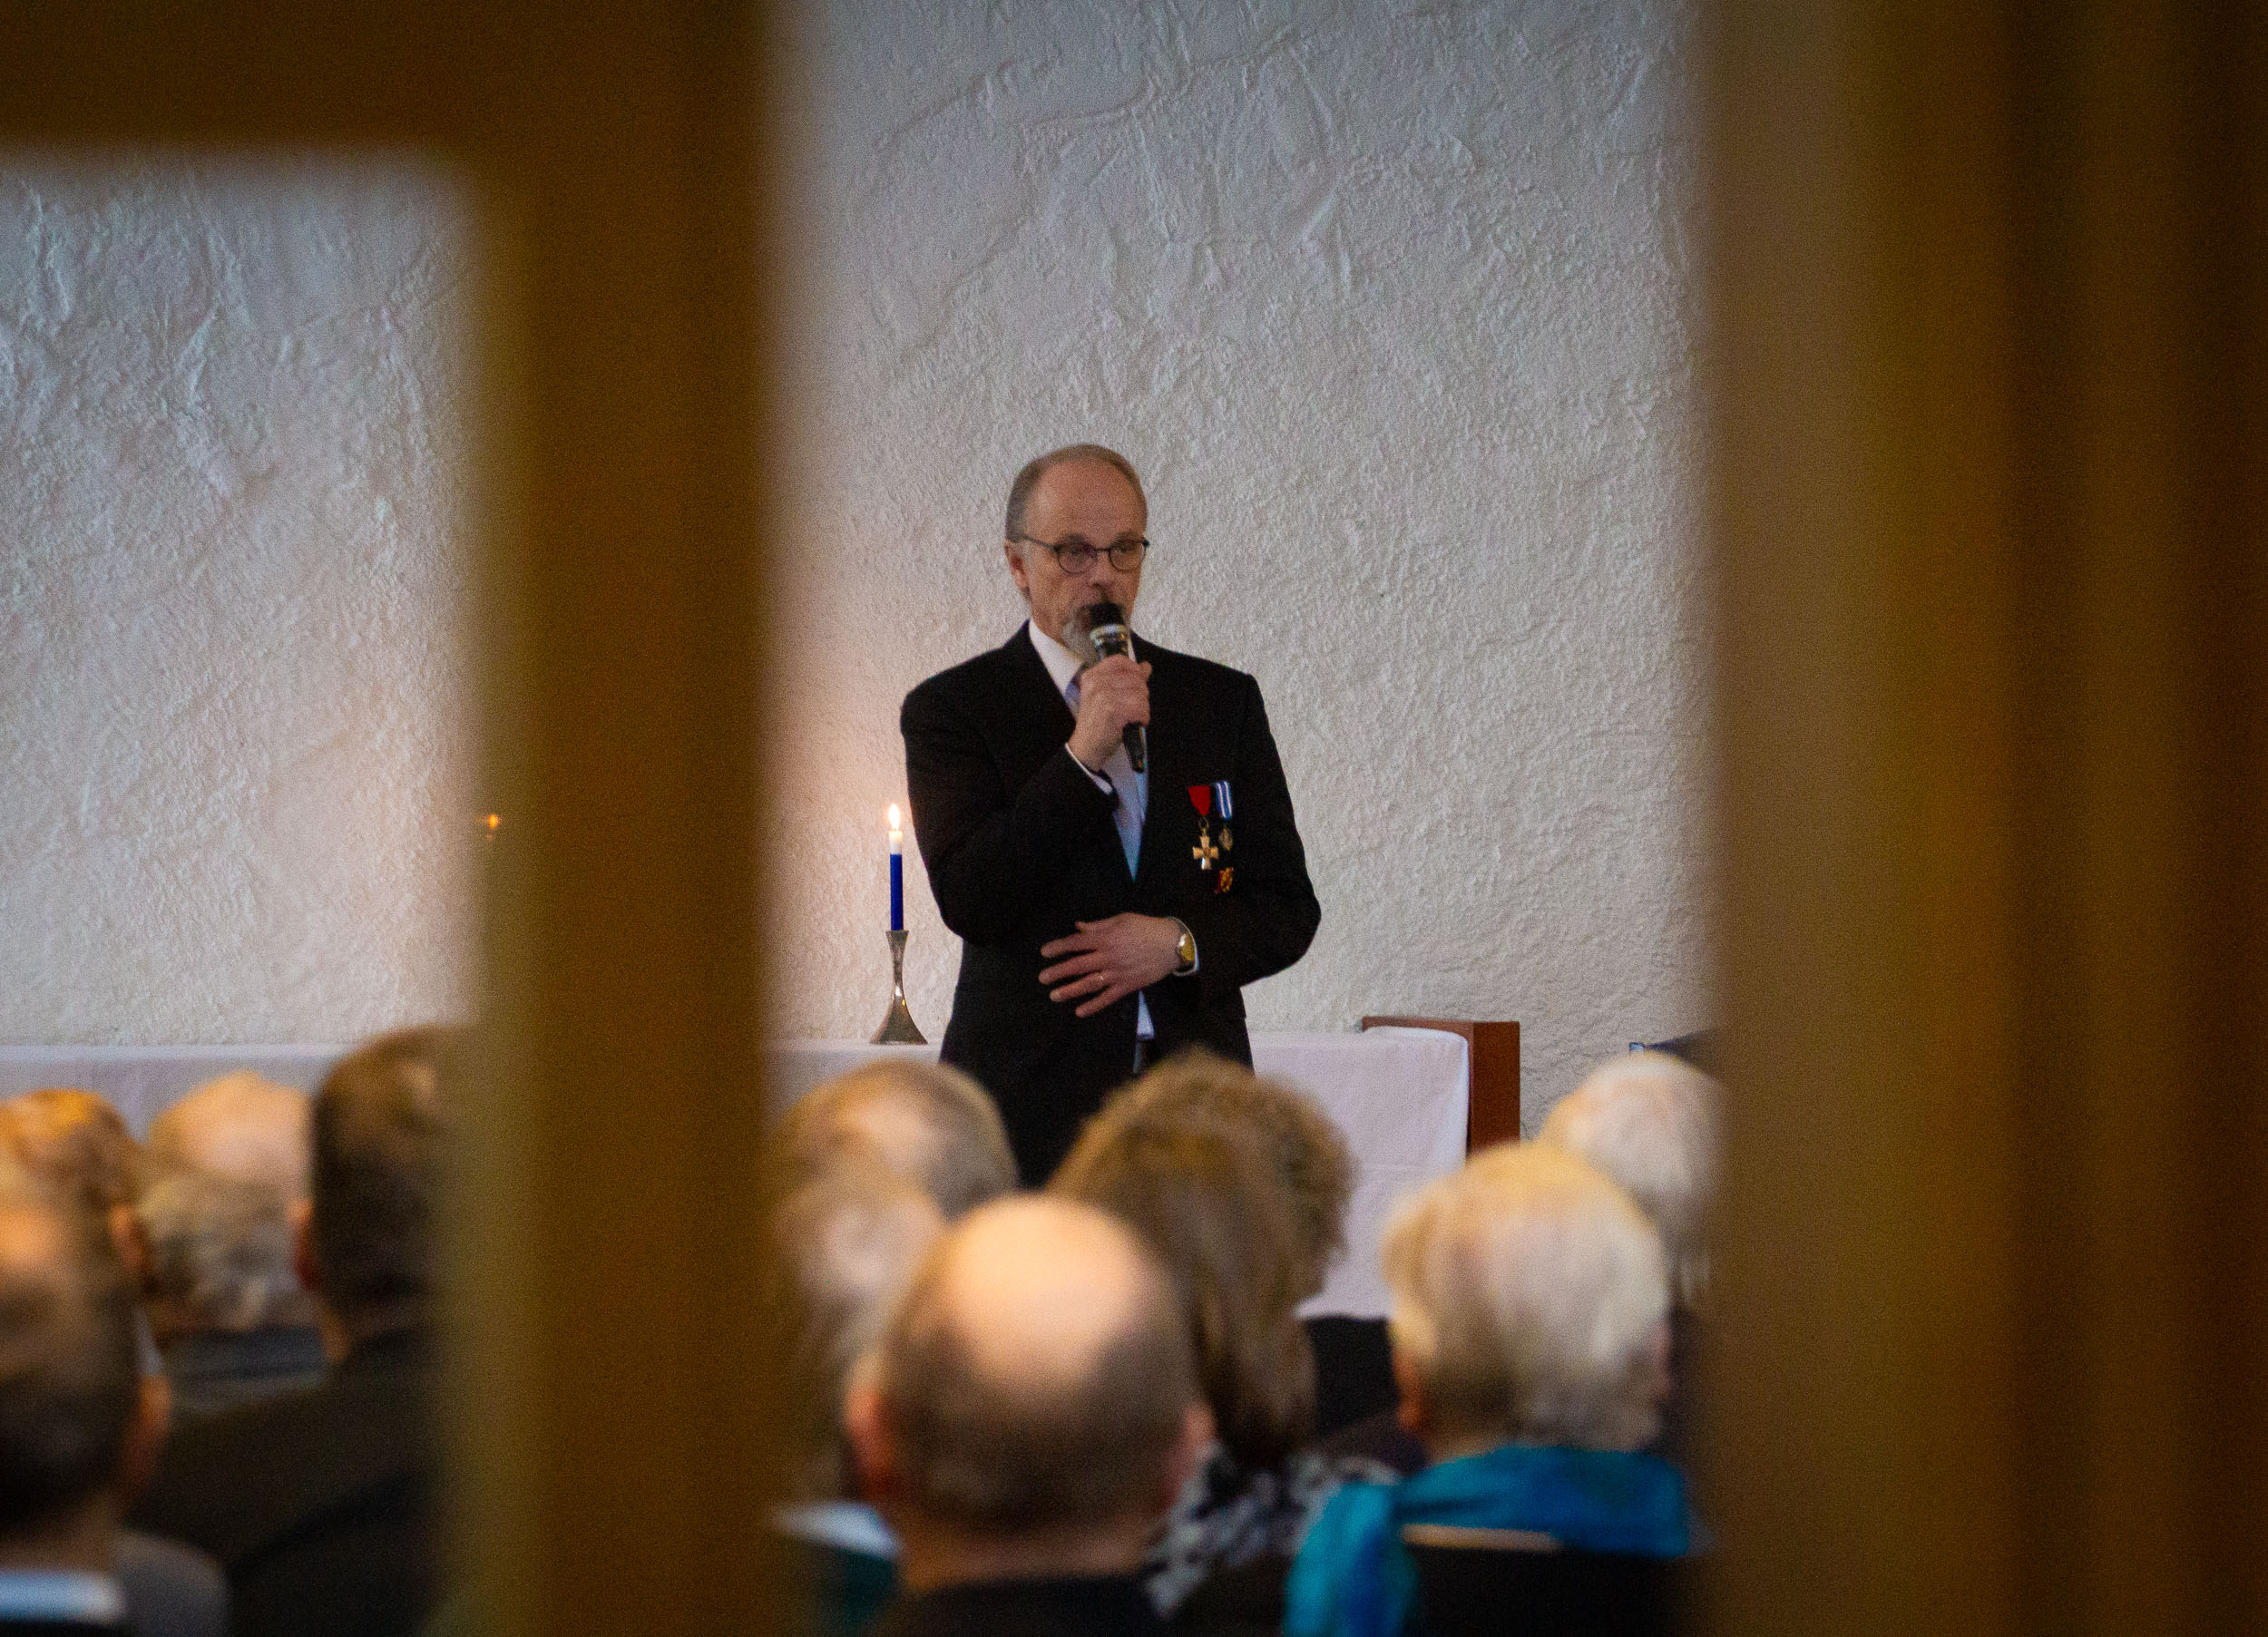 Kaupungin ja seurakunnan yhteistyössä järjestämän Itsenäisyysjuhlan juonsi vapaa-aikatoimenjohtaja Jorma Rihto.